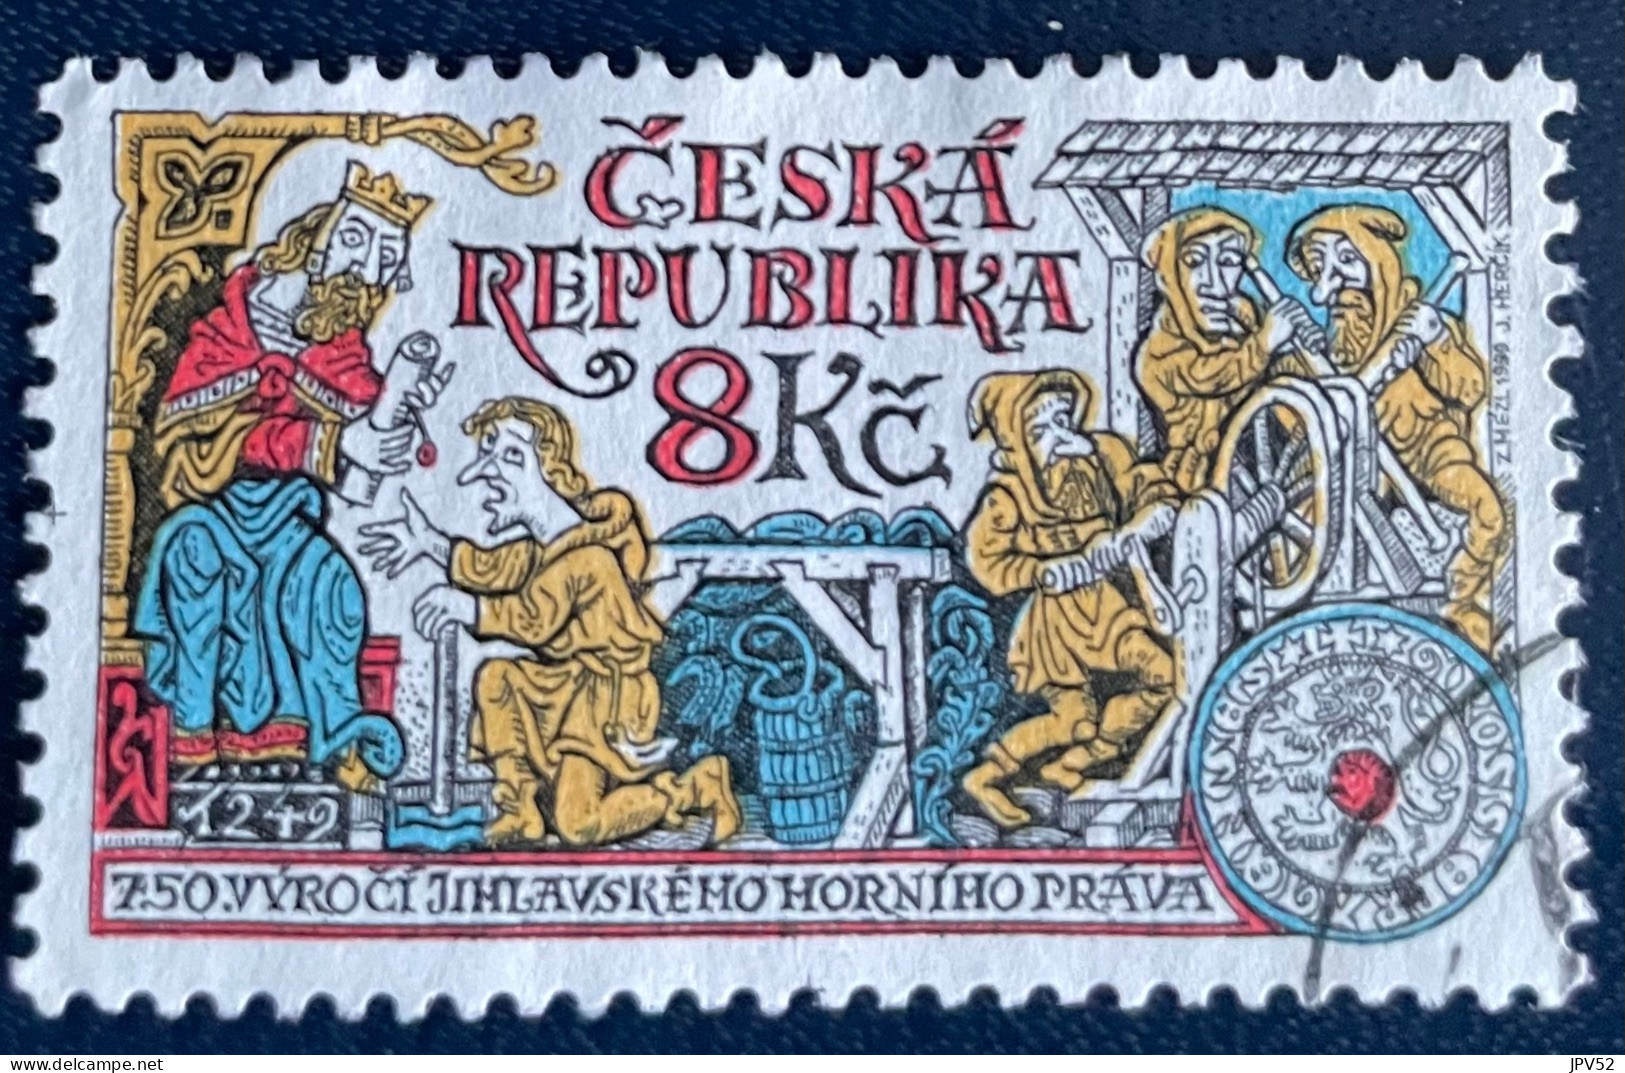 Ceska Republika - Tsjechië - C4/5 - 1999 - (°)used - Michel 223 - 750j Mijnbouwconcessie - Oblitérés